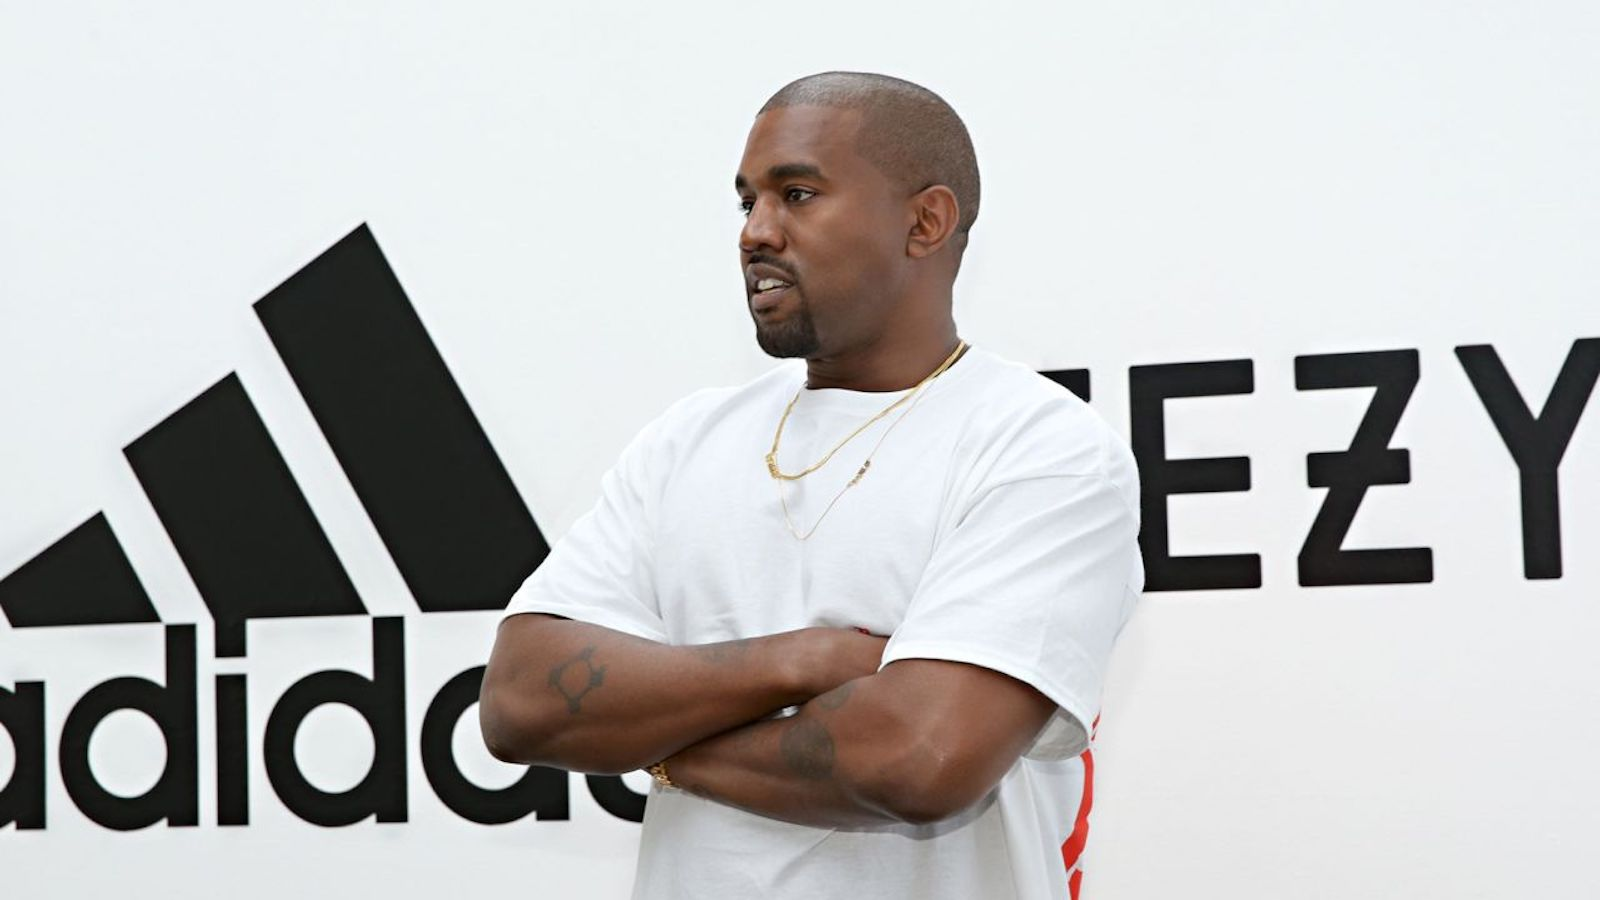 Kanye West estaba asociado con Adidas desde 2013
(Crédito: Jonathan Leibson/Getty Images for Adidas)